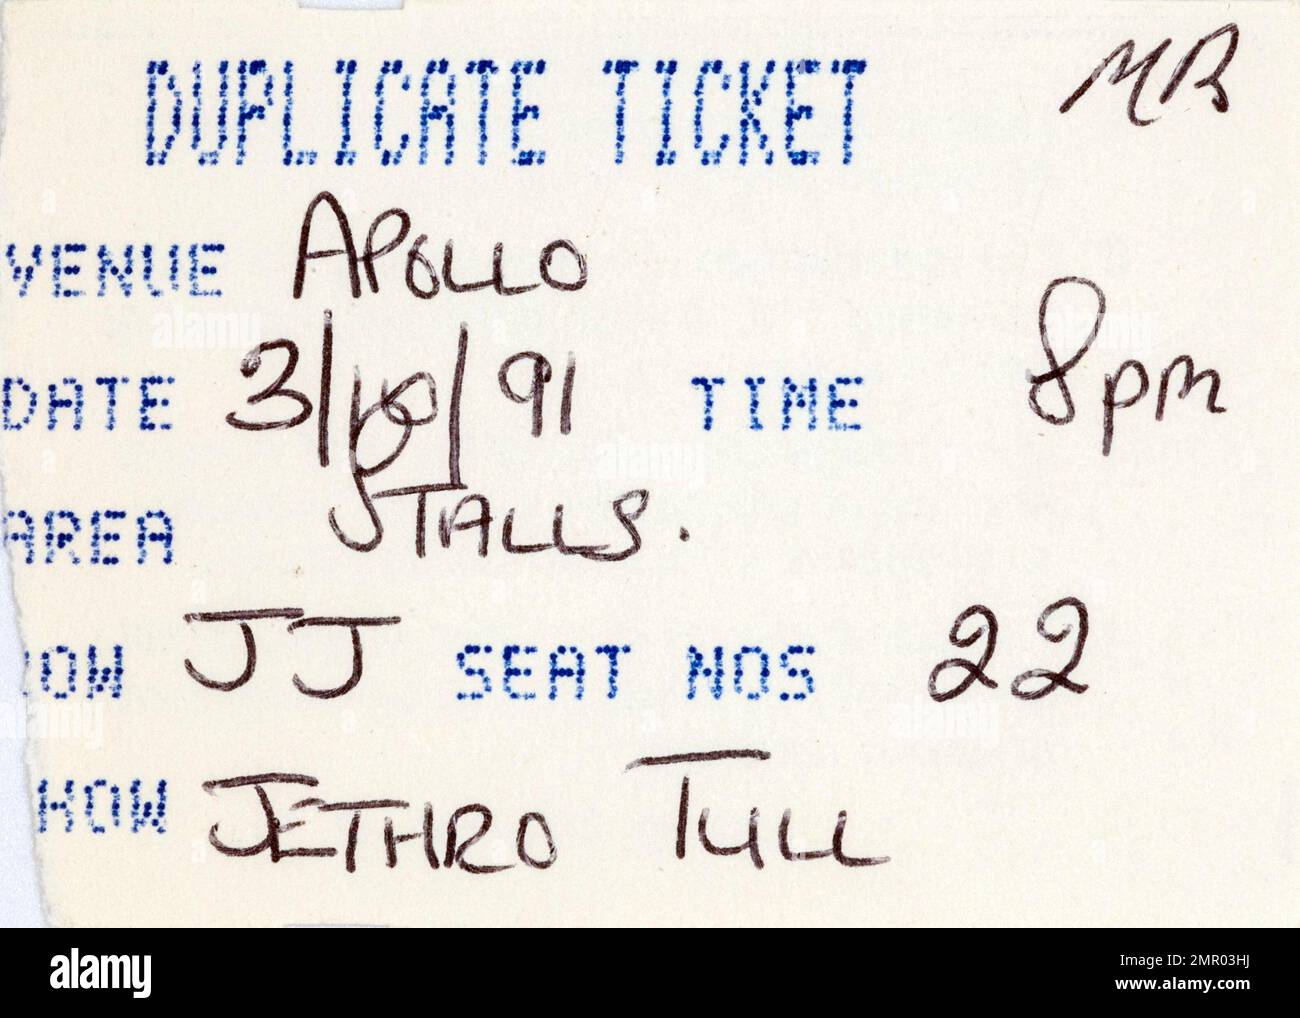 Biglietto duplicato, Jethro Tull, 3 ottobre 1991, stub di biglietti per concerti, memorabilia di concerti di musica, Manchester, Inghilterra, Regno Unito Foto Stock